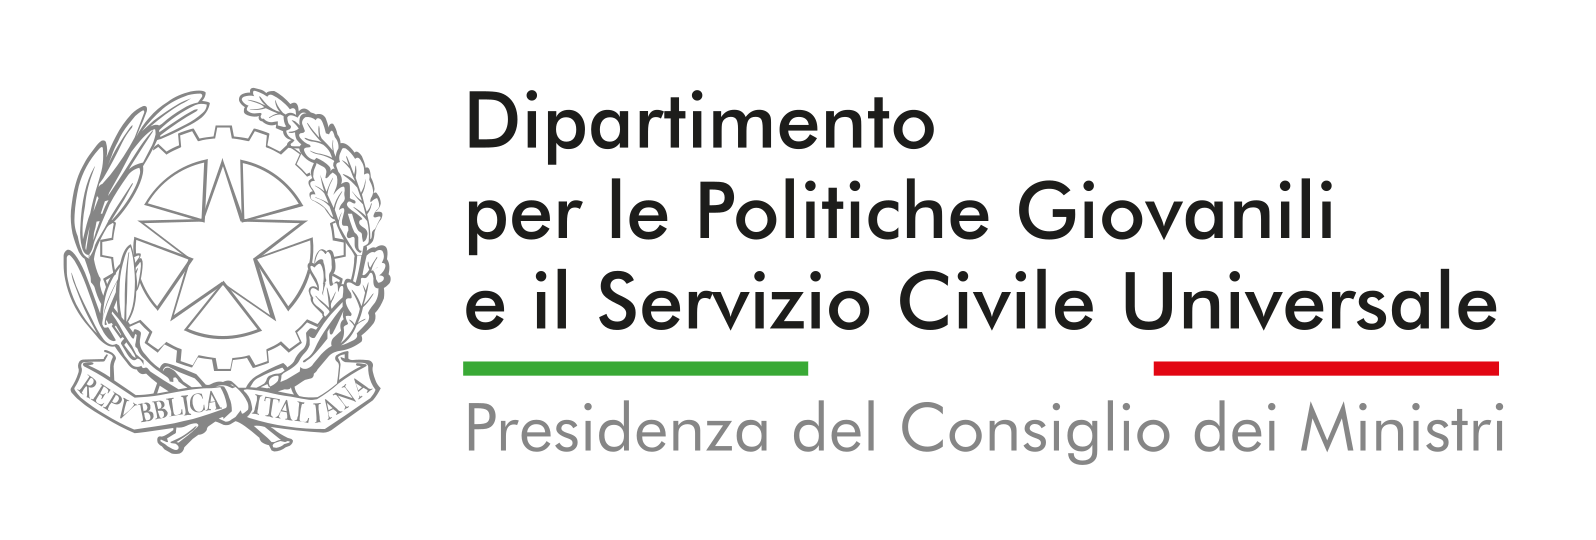 Logo Dipartimento per le Politiche Giovanili e il Servizio Civile Universale